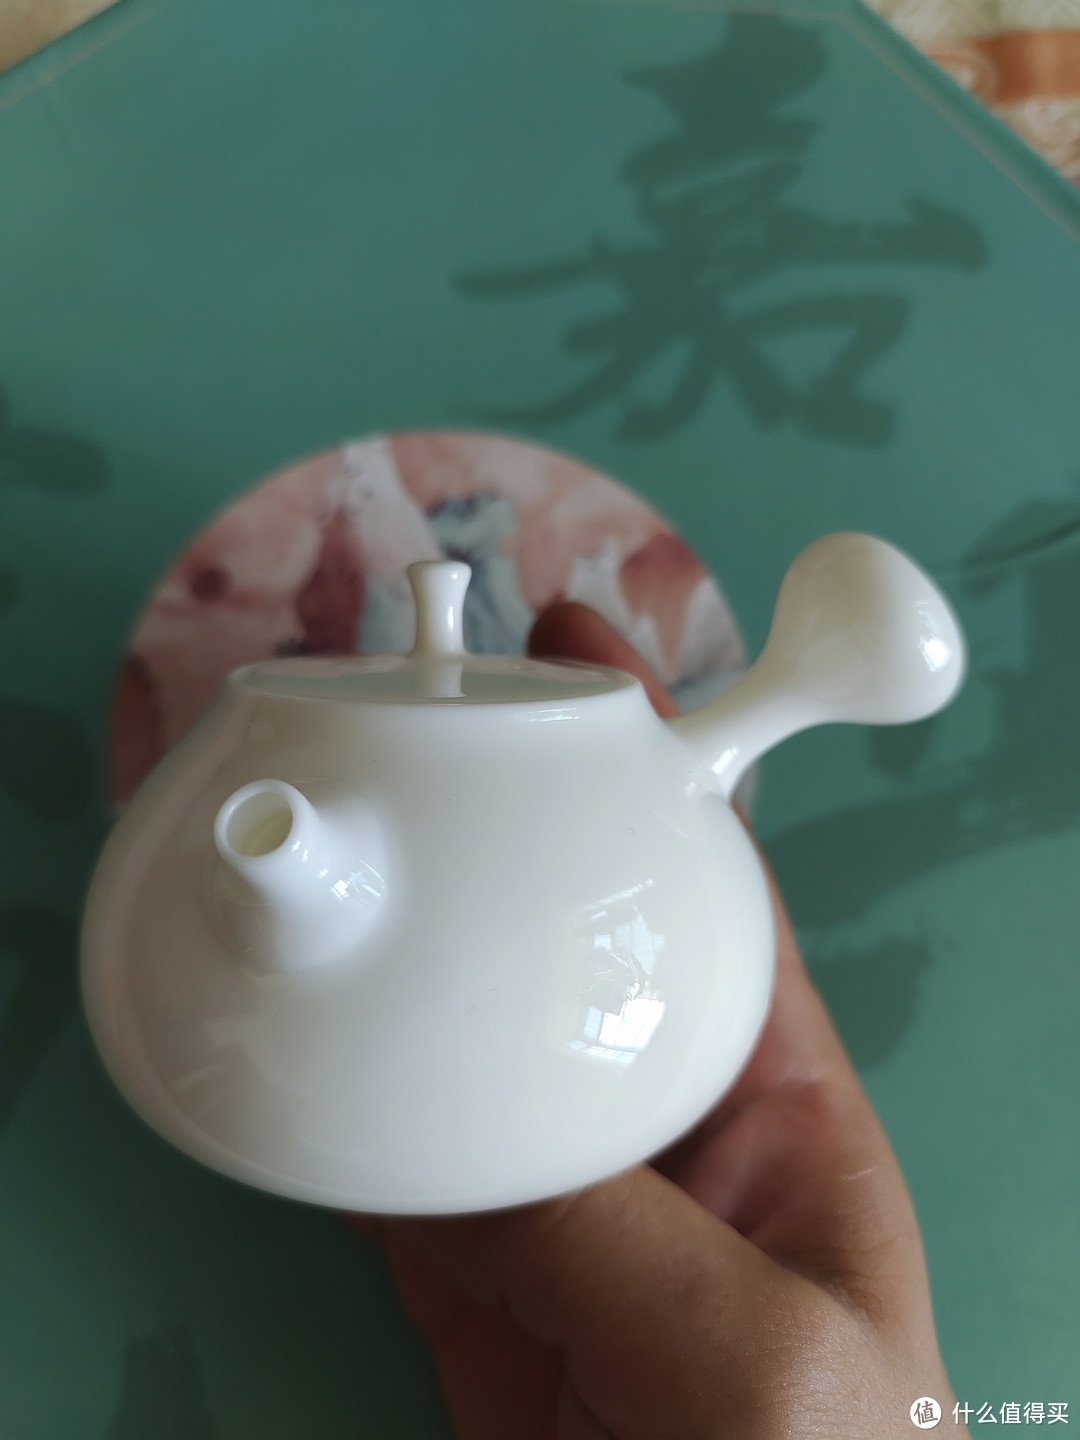 德化白羊脂玉茶壶品鉴：晶莹剔透，纯白温润典型性作的中国白